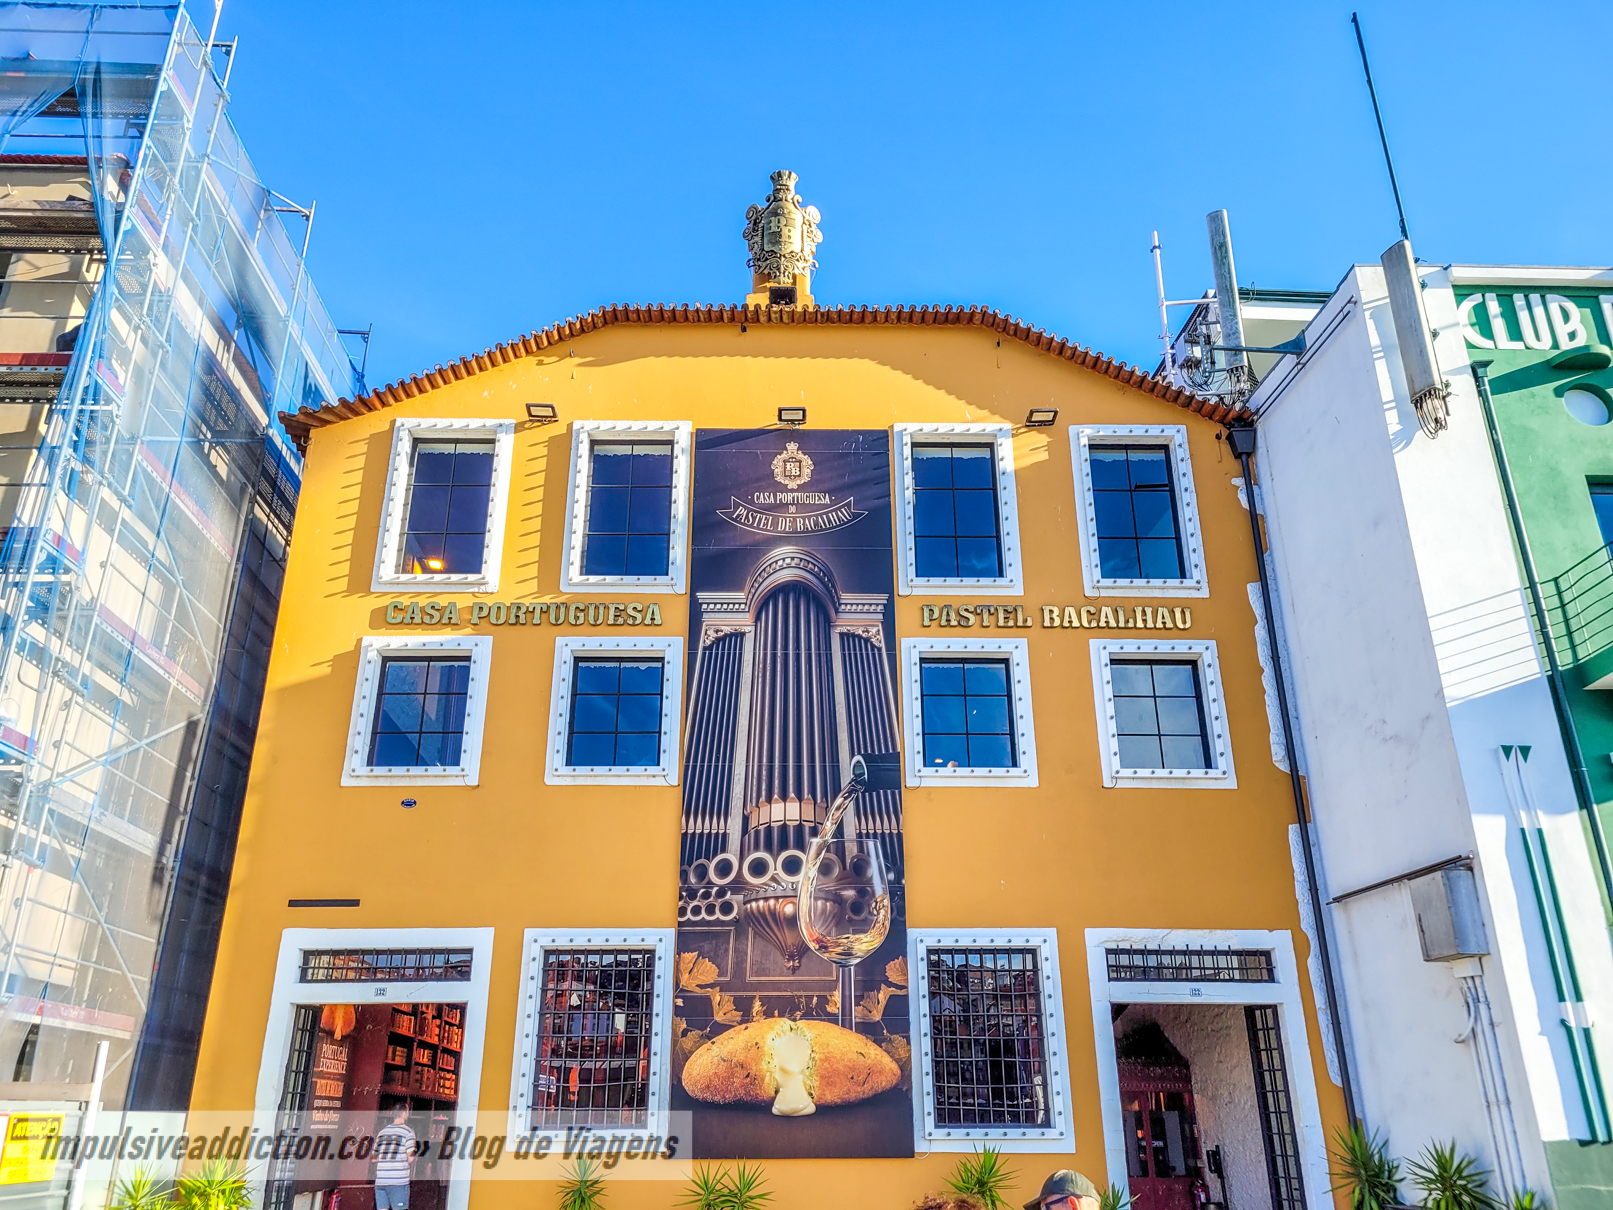 Casa Portuguesa do Pastel de Bacalhau (Ribeira de Gaia)